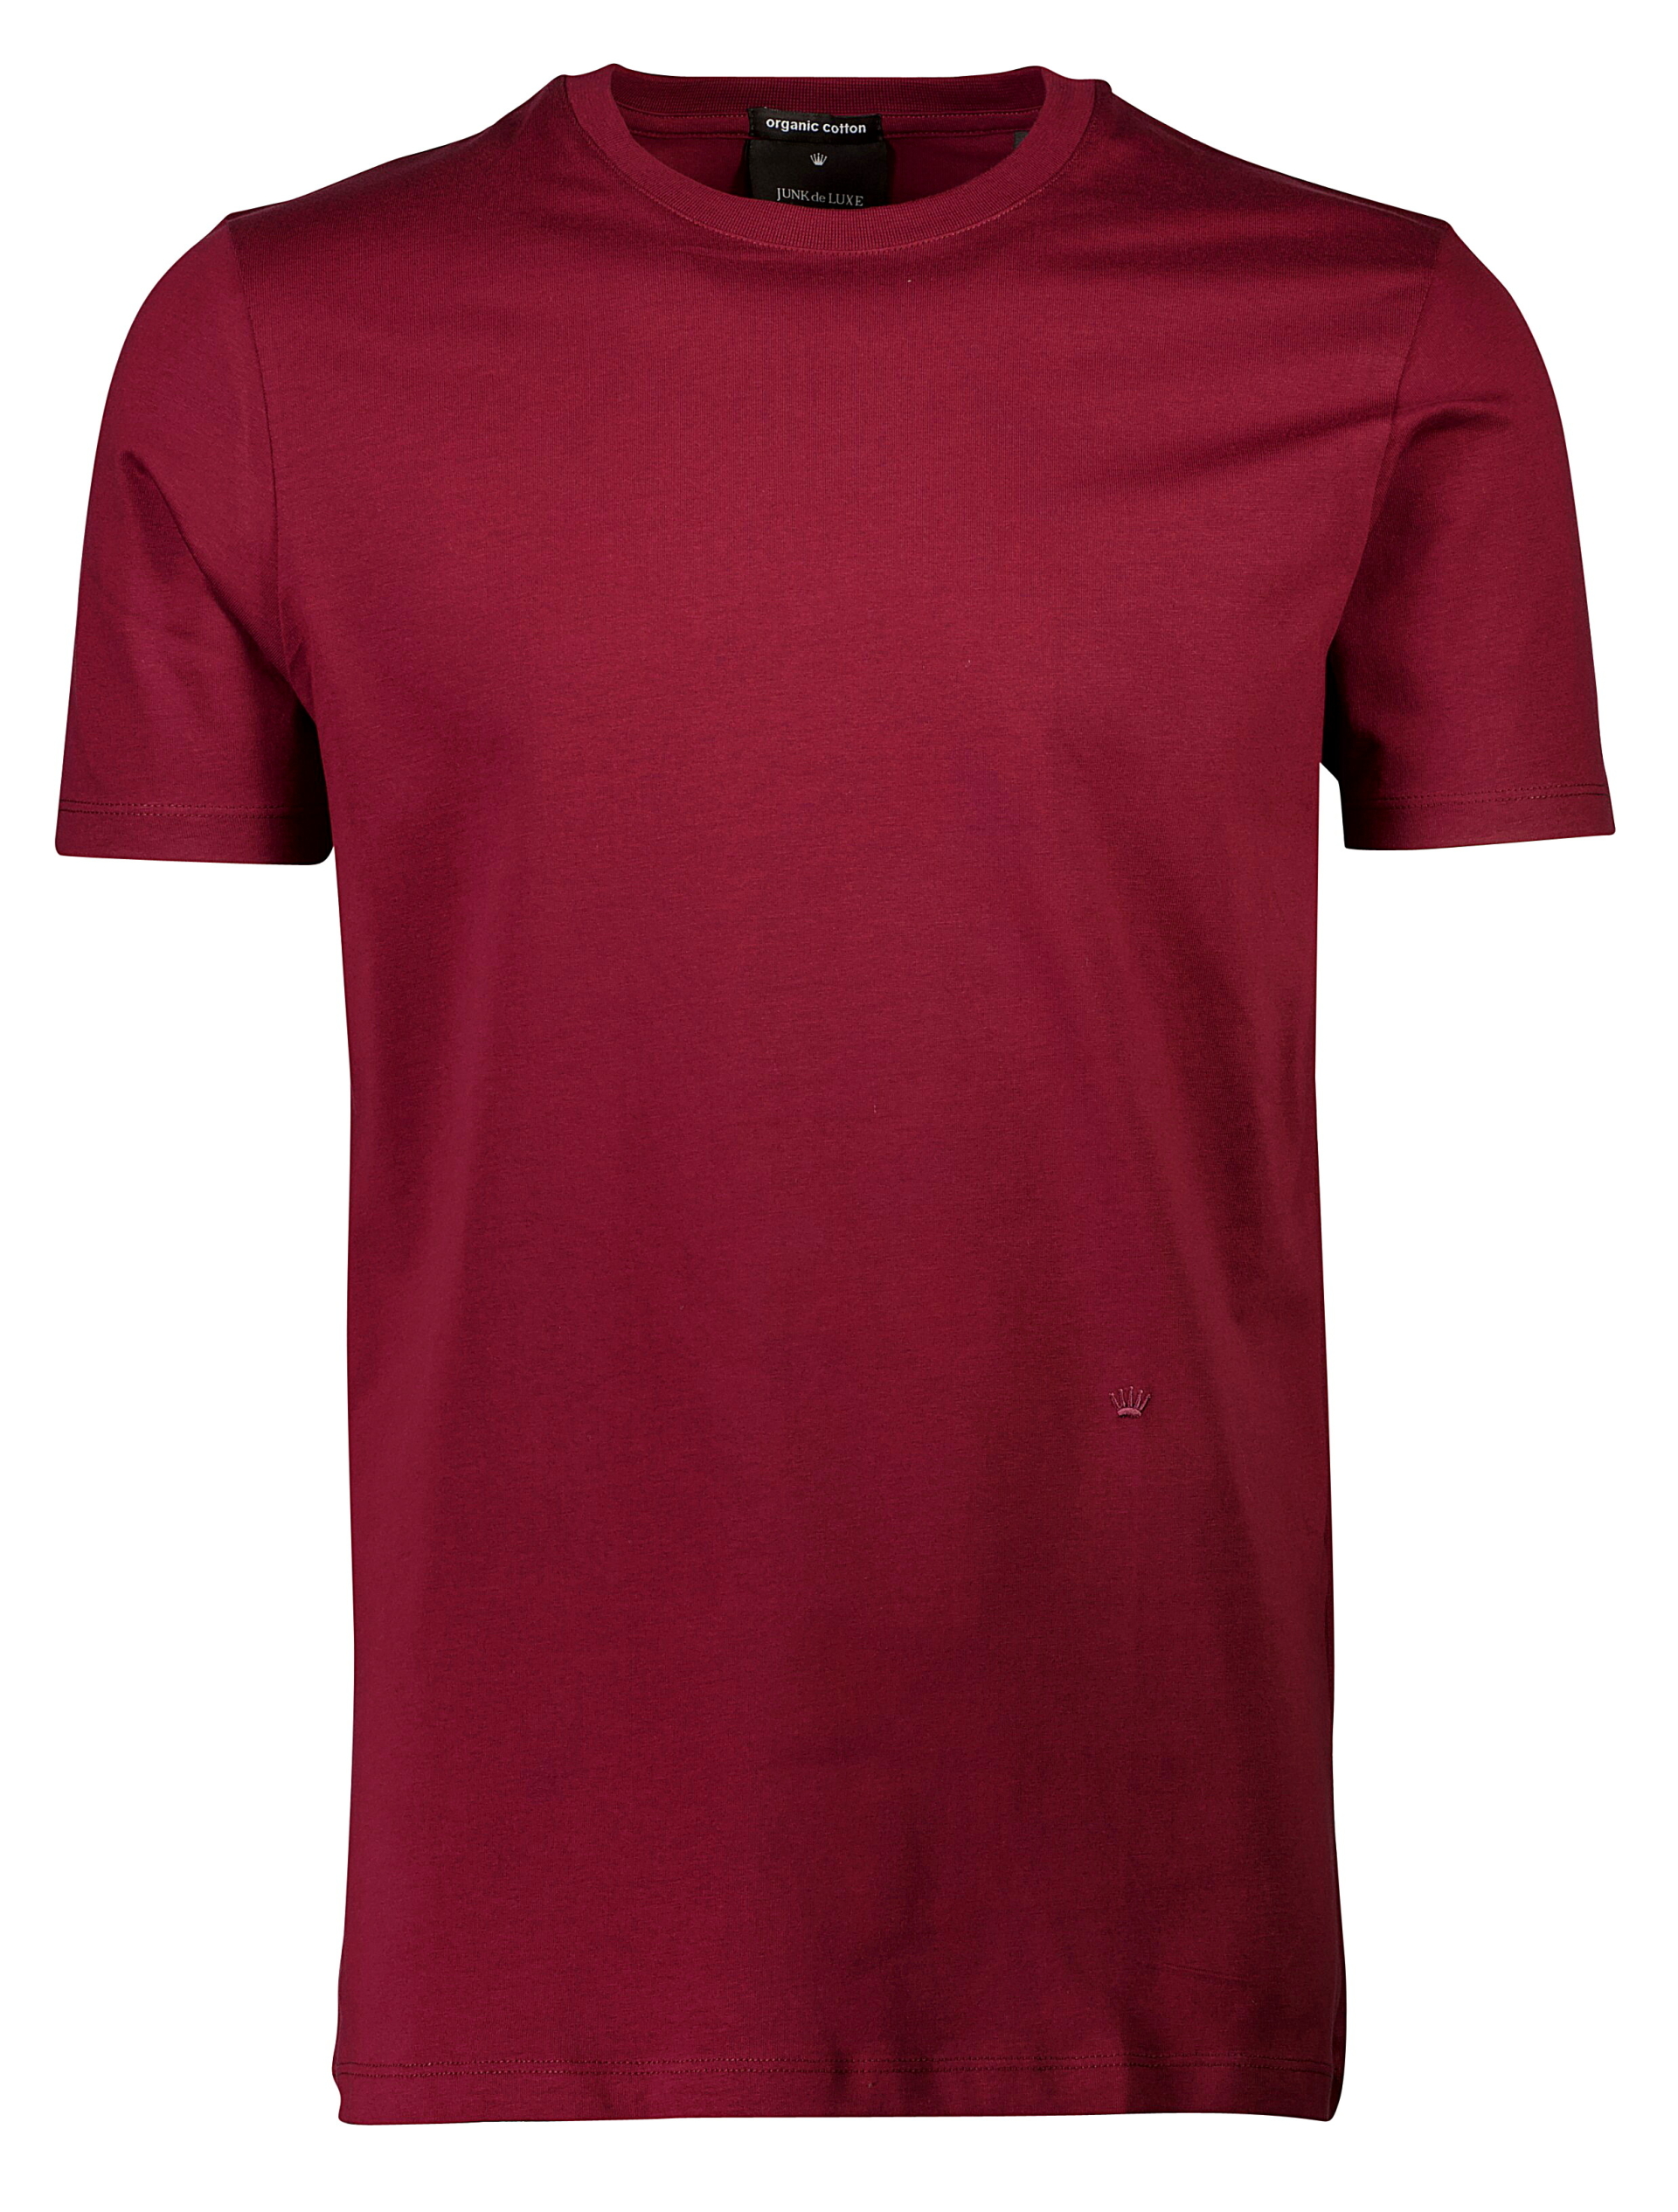 Junk de Luxe T-shirt röd / burgundy